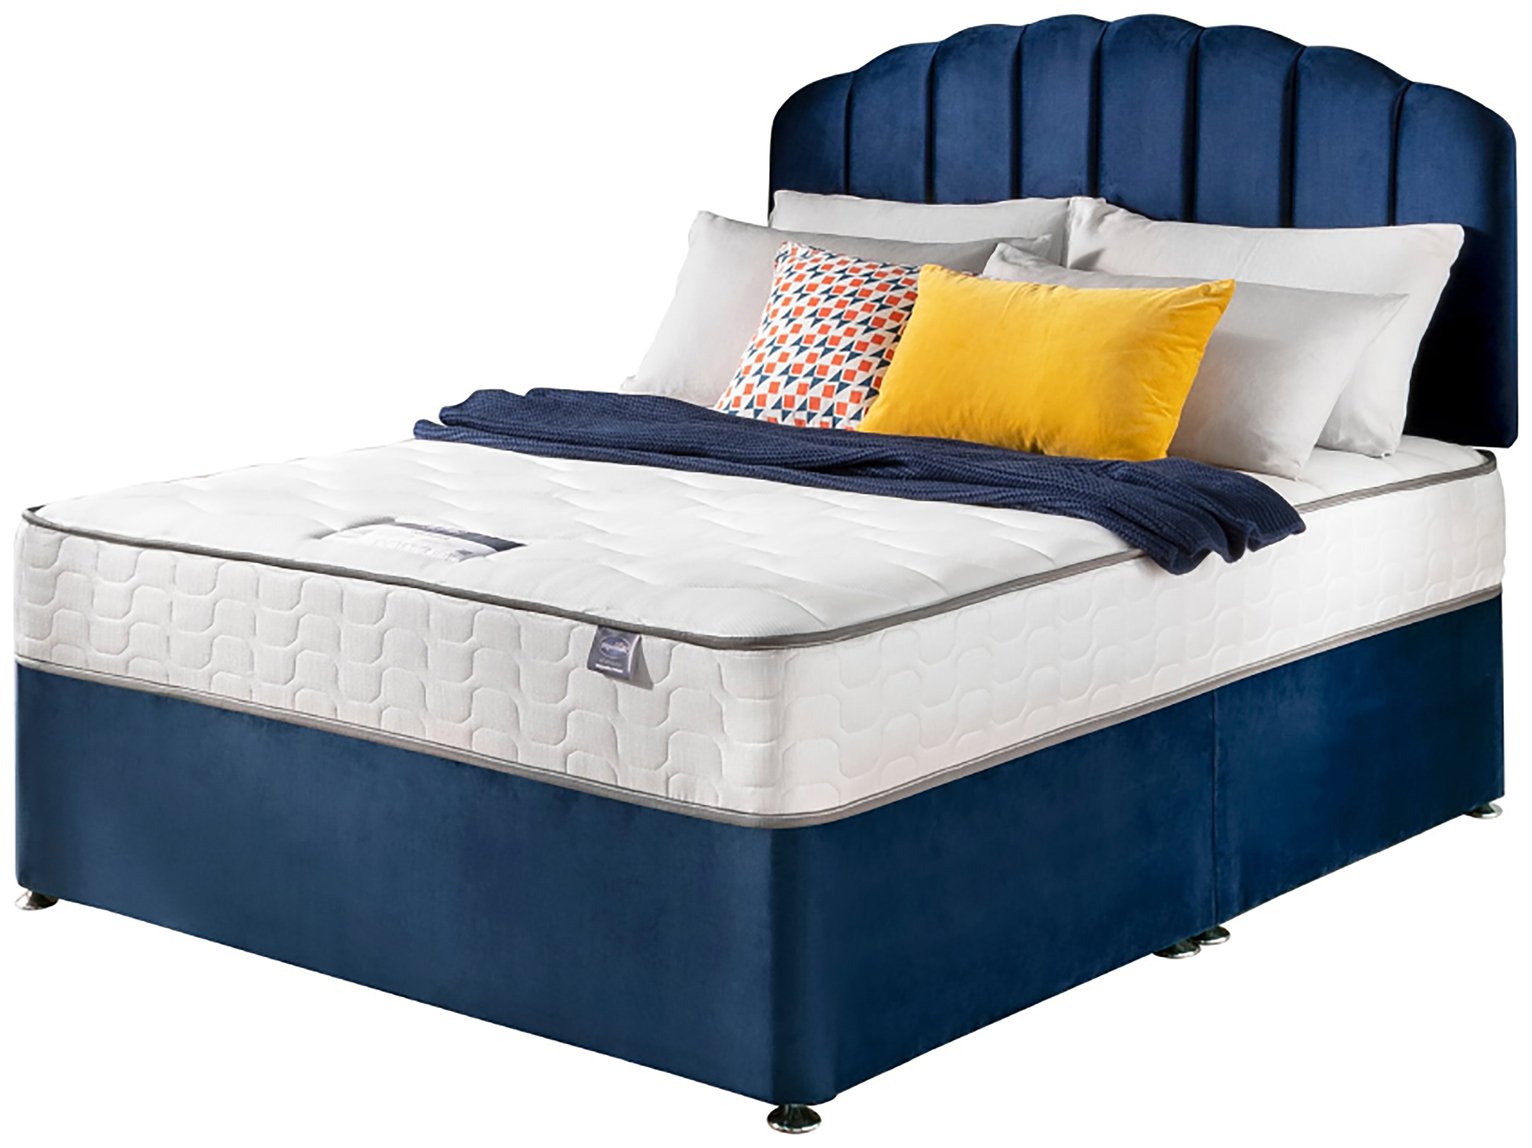 Silentnight Middleton Double Comfort Divan Bed - Blue